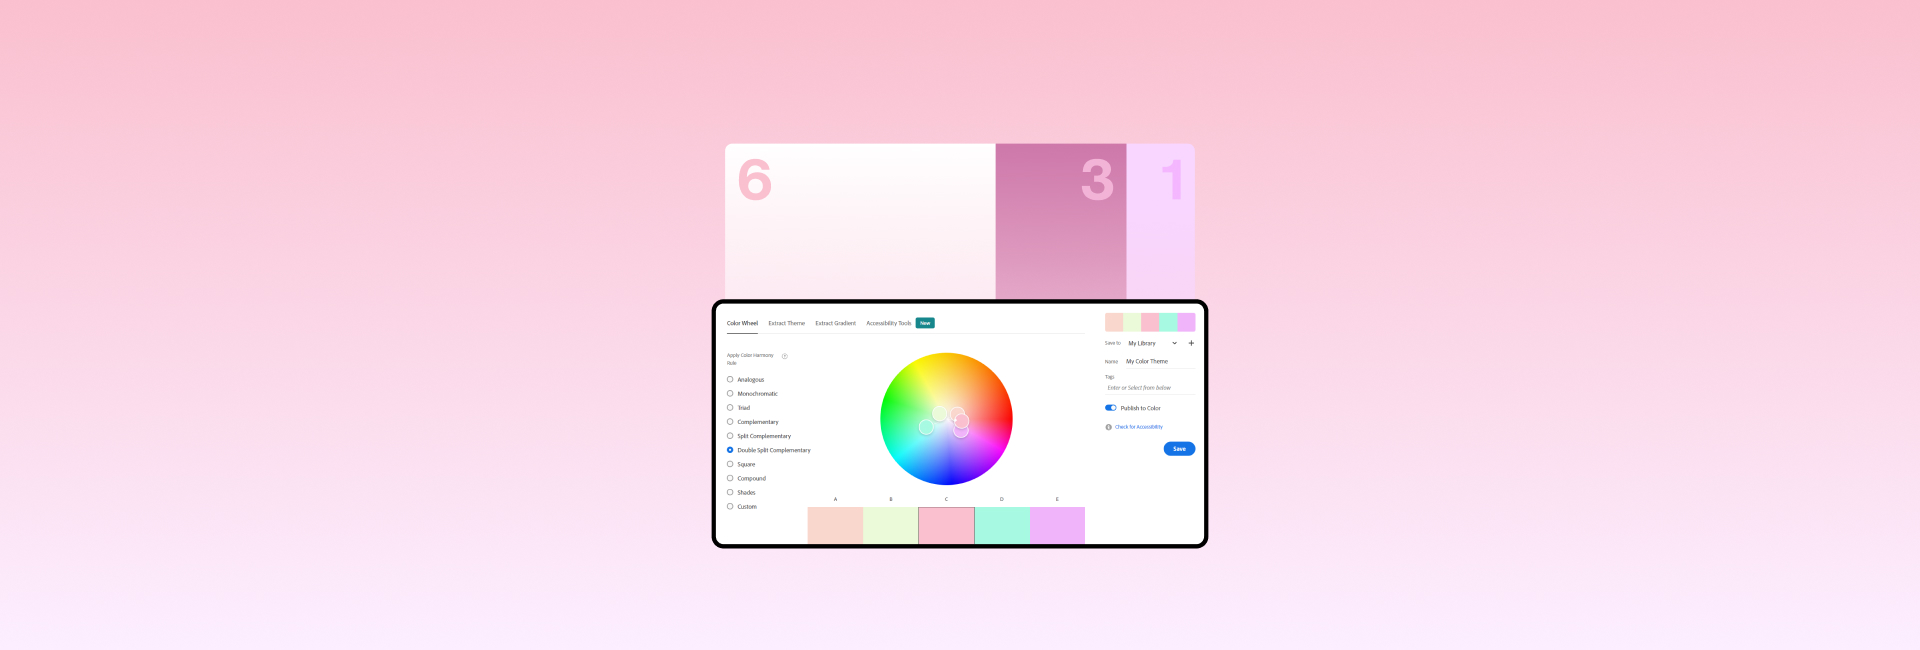 Ứng dụng màu sắc trong thiết kế website